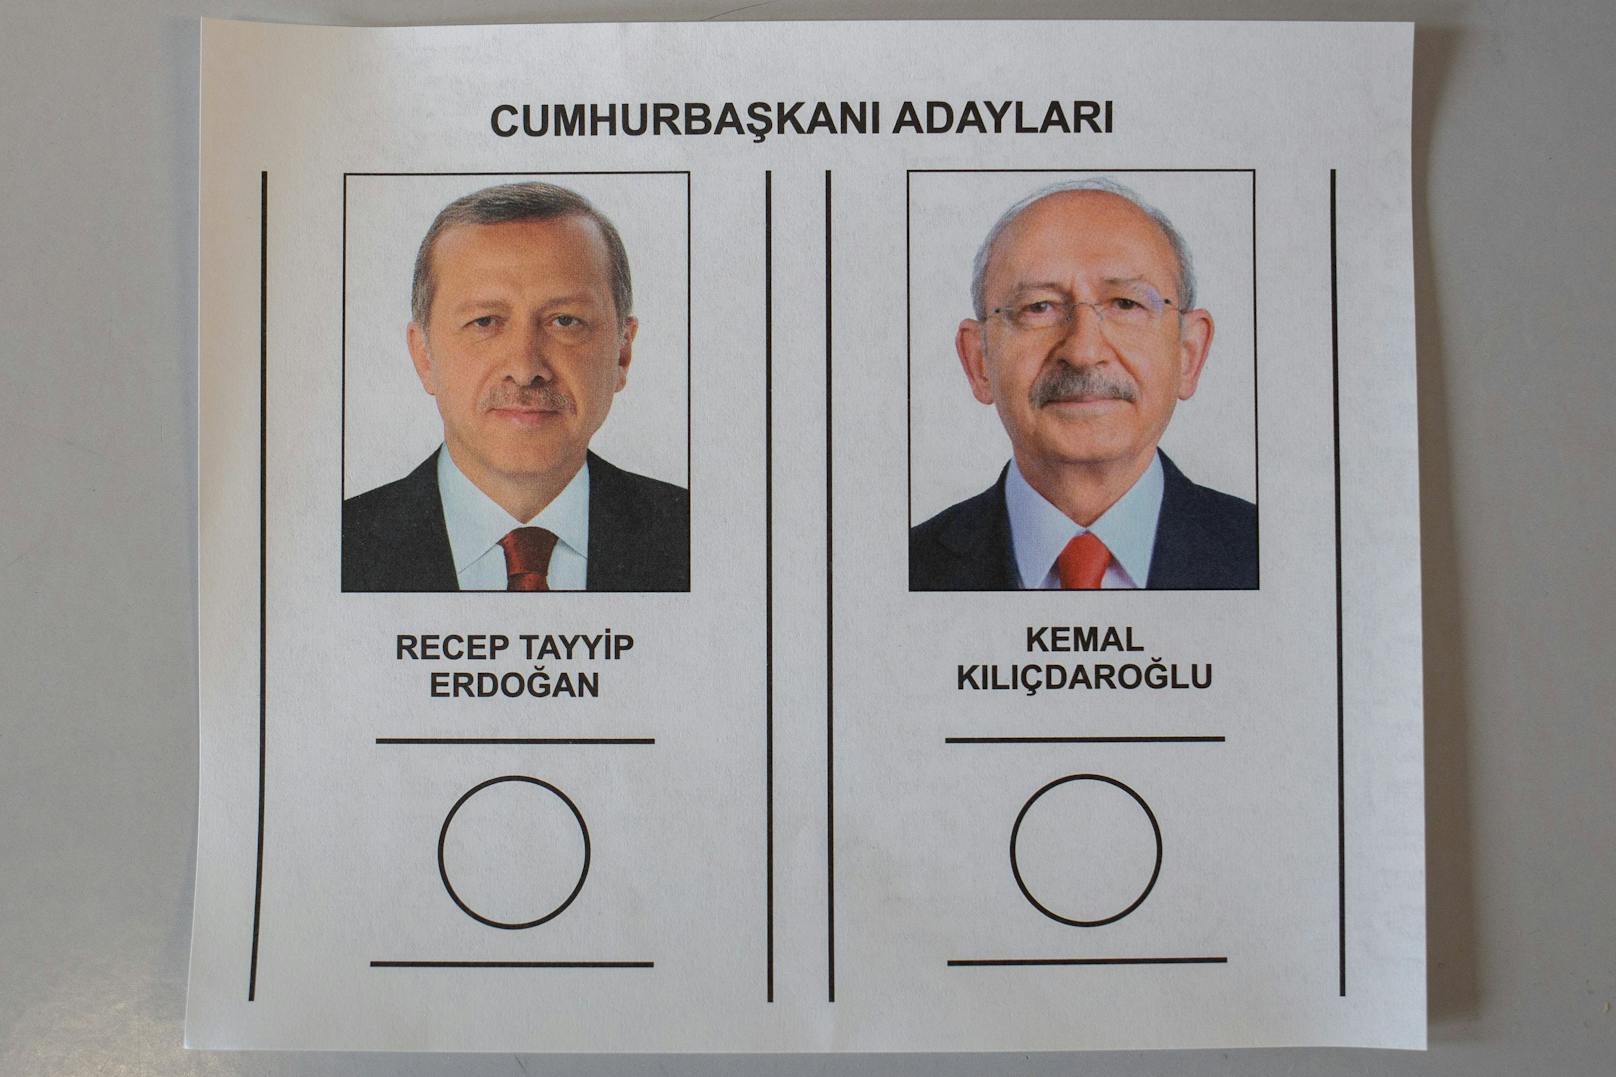 In der Türkei kämpfen Amtsinhaber Recep Tayyip Erdogan und Kemal Kilicdaroglu in einer Stichwahl um das Präsidentenamt.